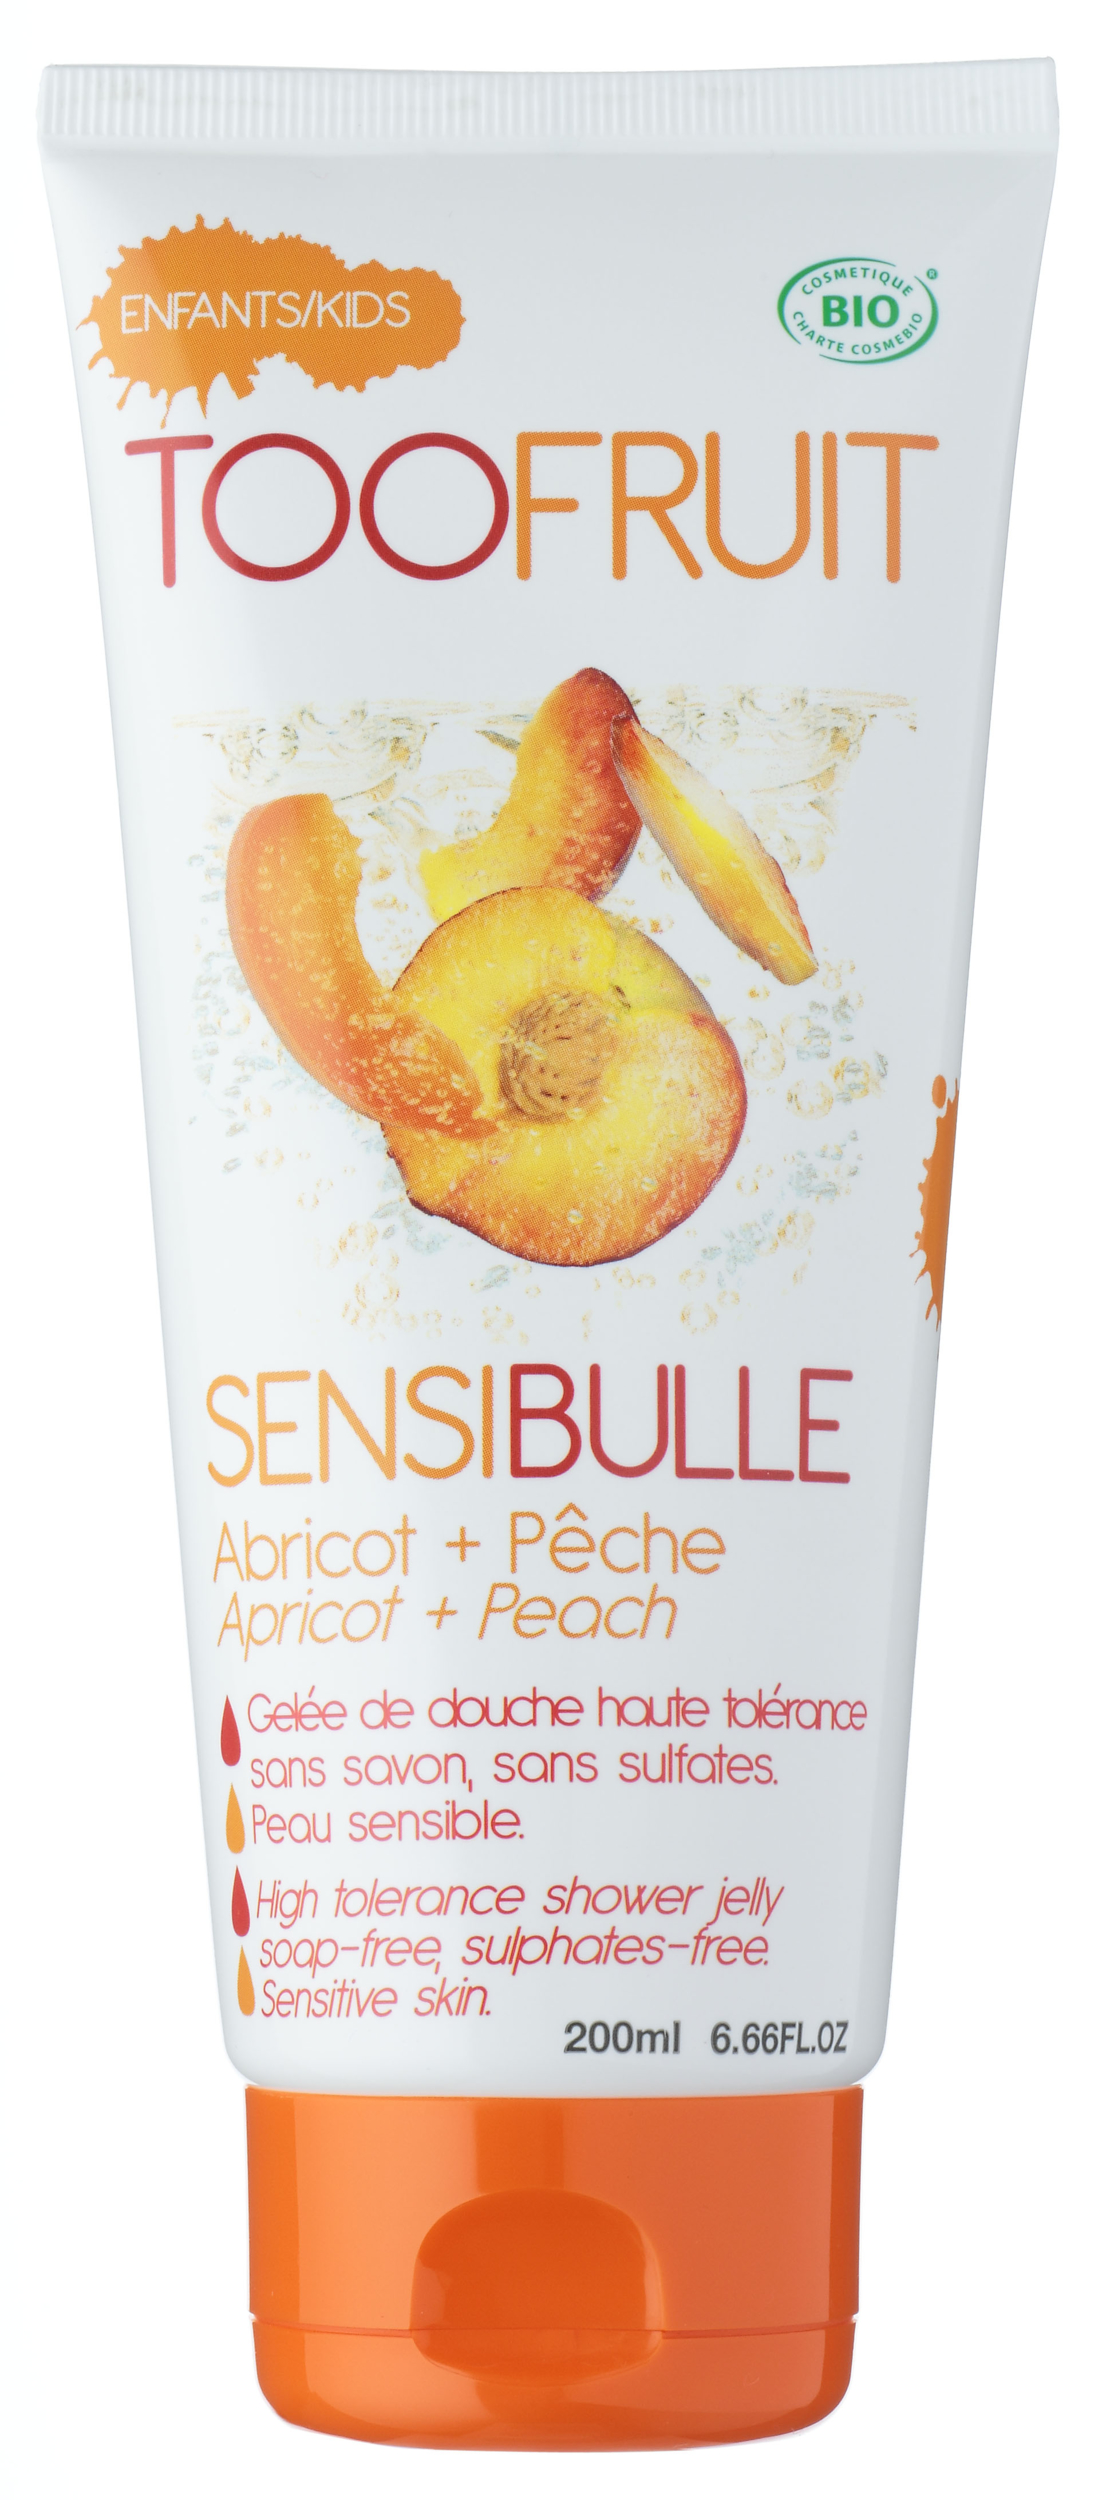 Doux Good - Toofruit sensibulle abricot pêche gel douche